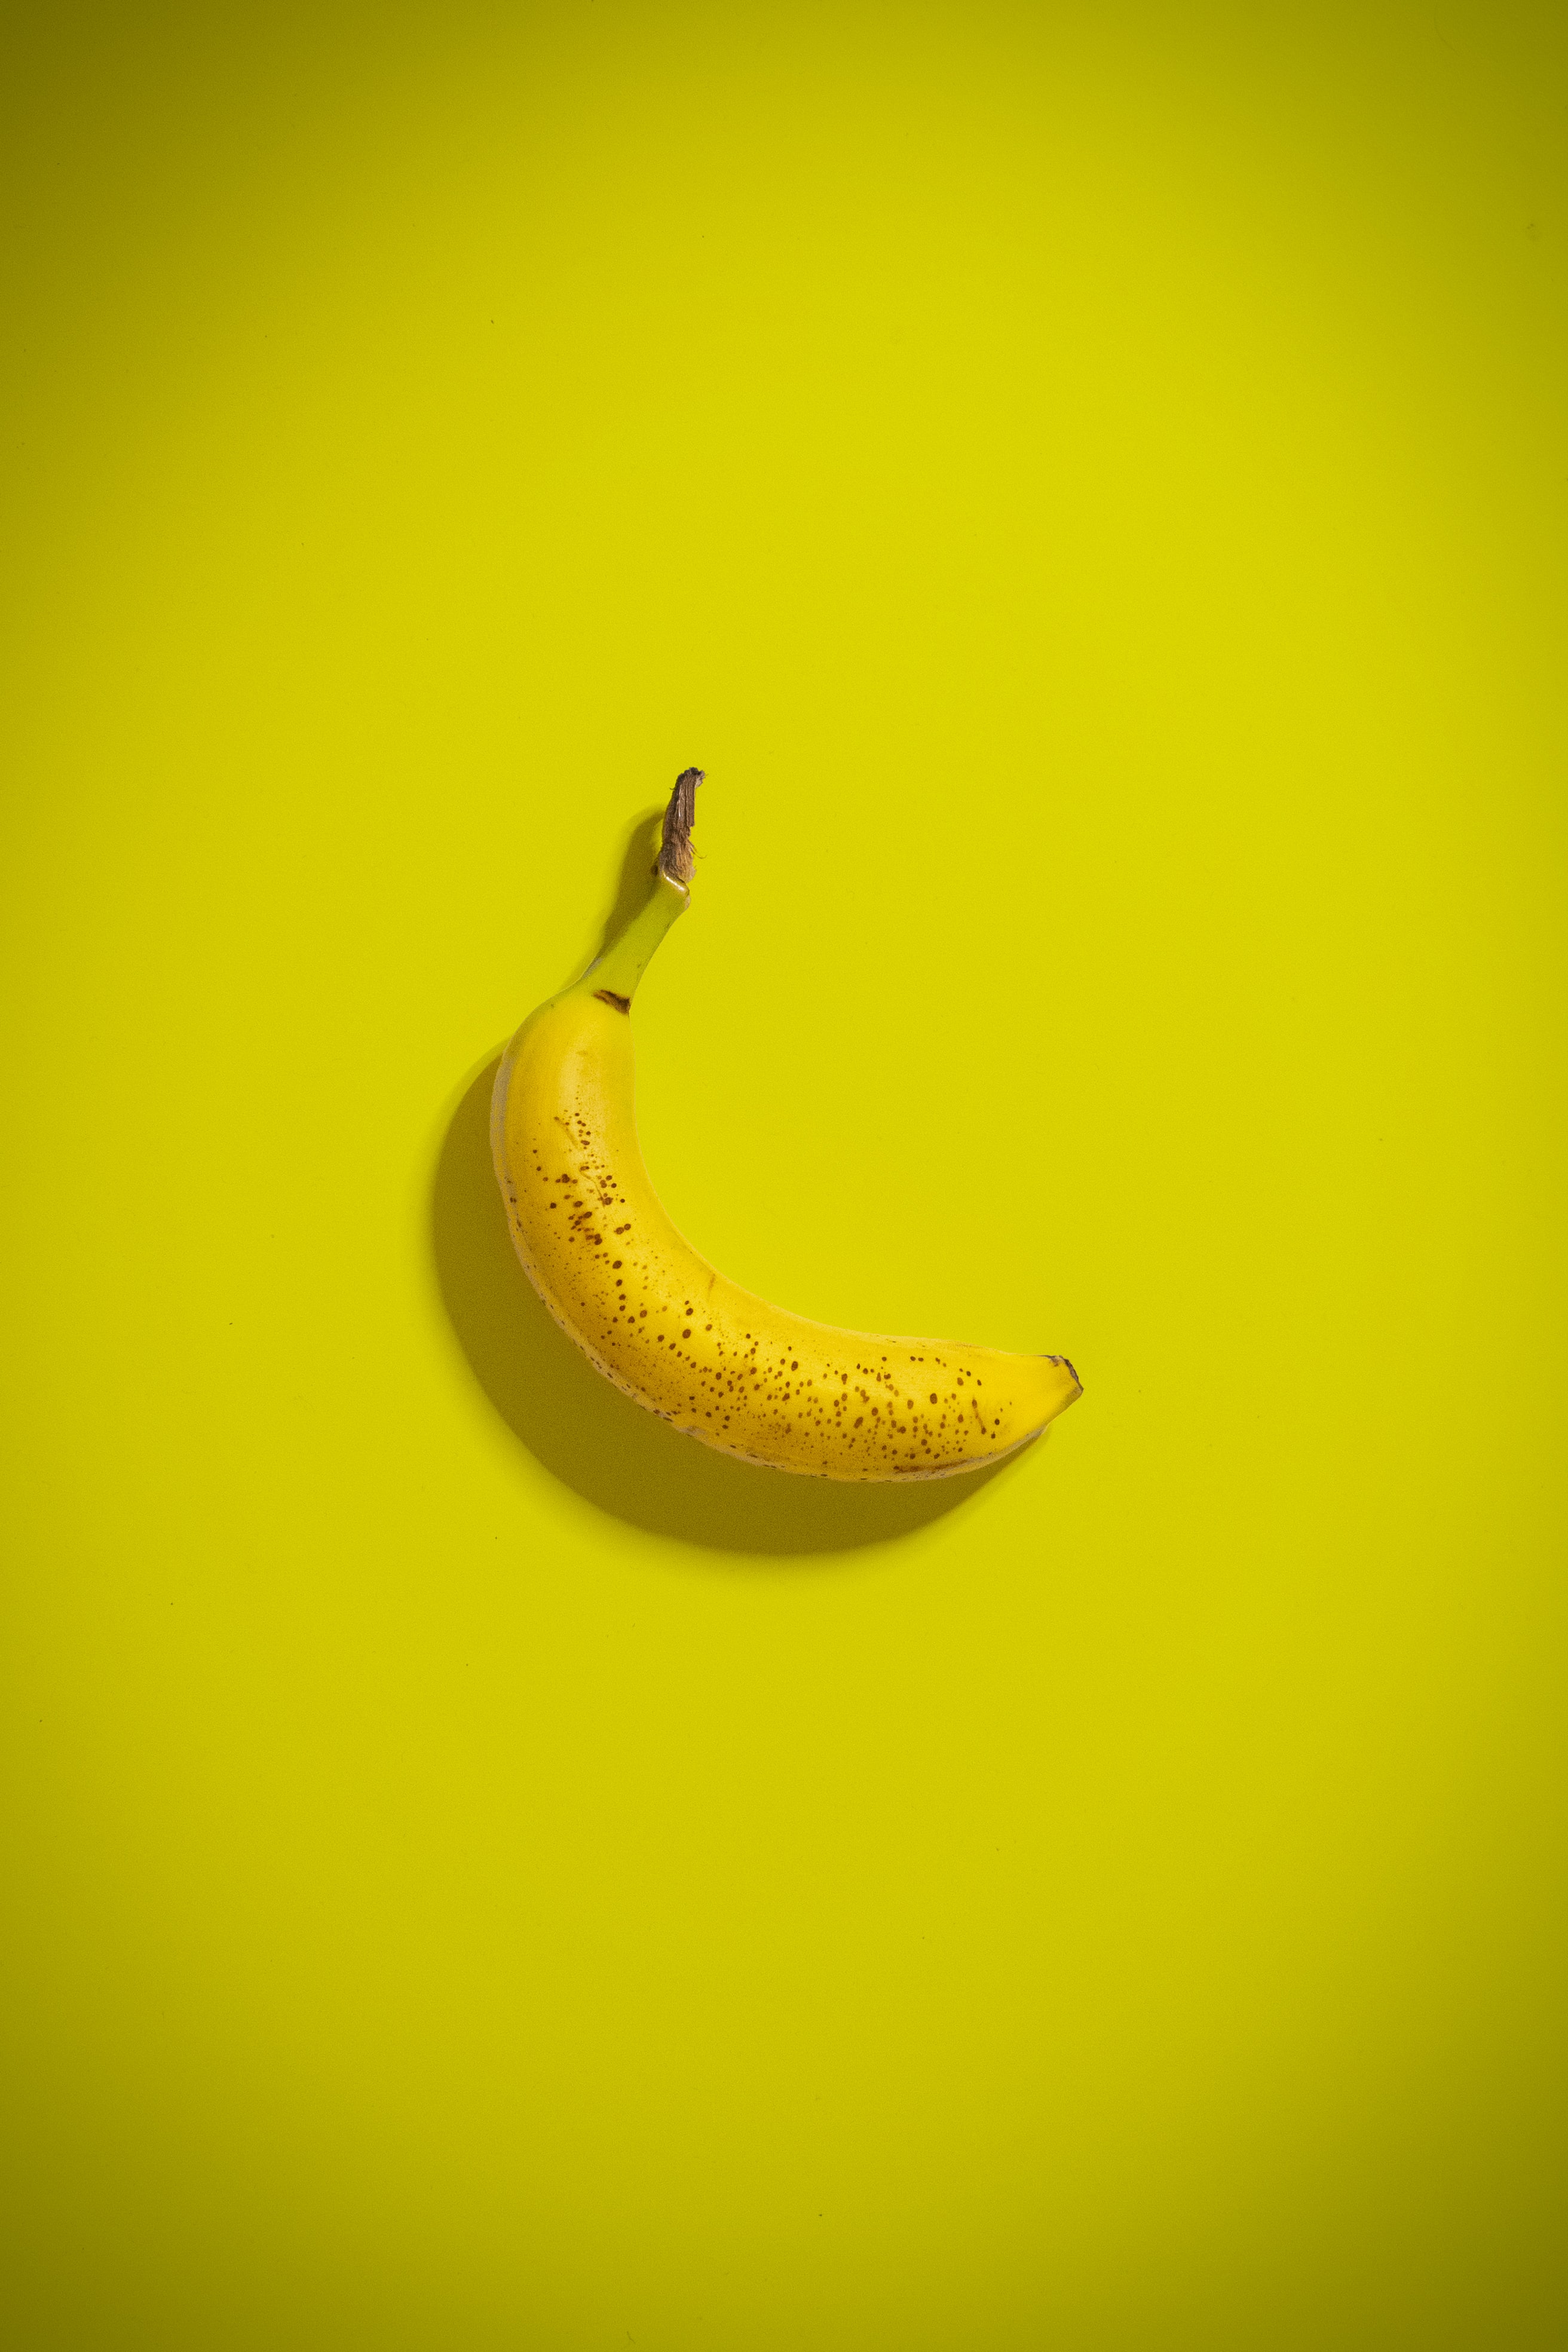 Популярные заставки и фоны Банан на компьютер